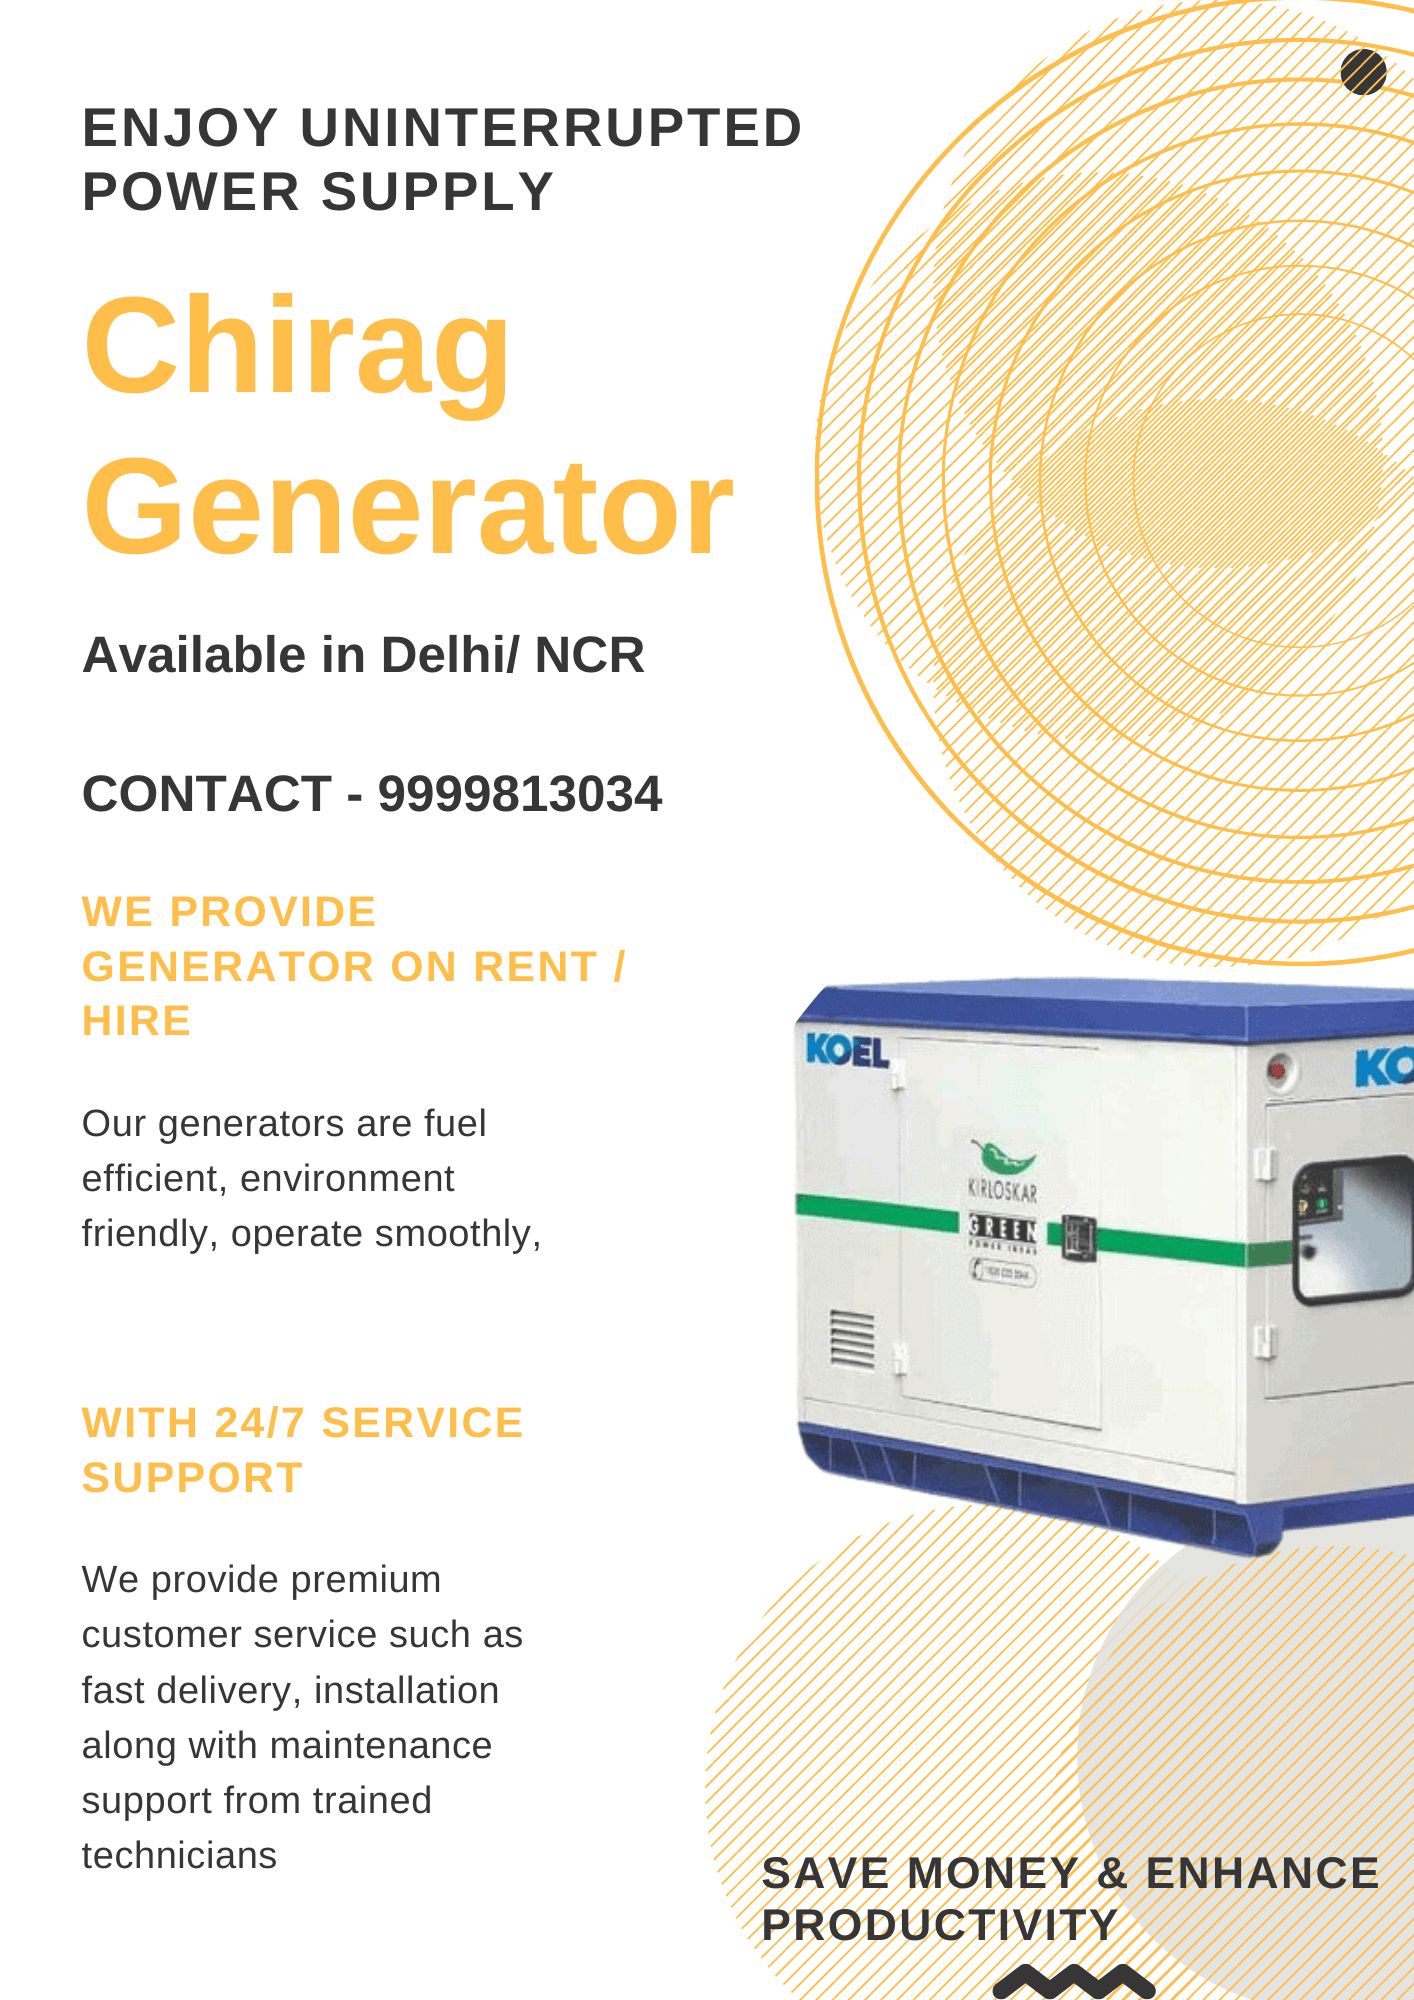 Generator on rental basis